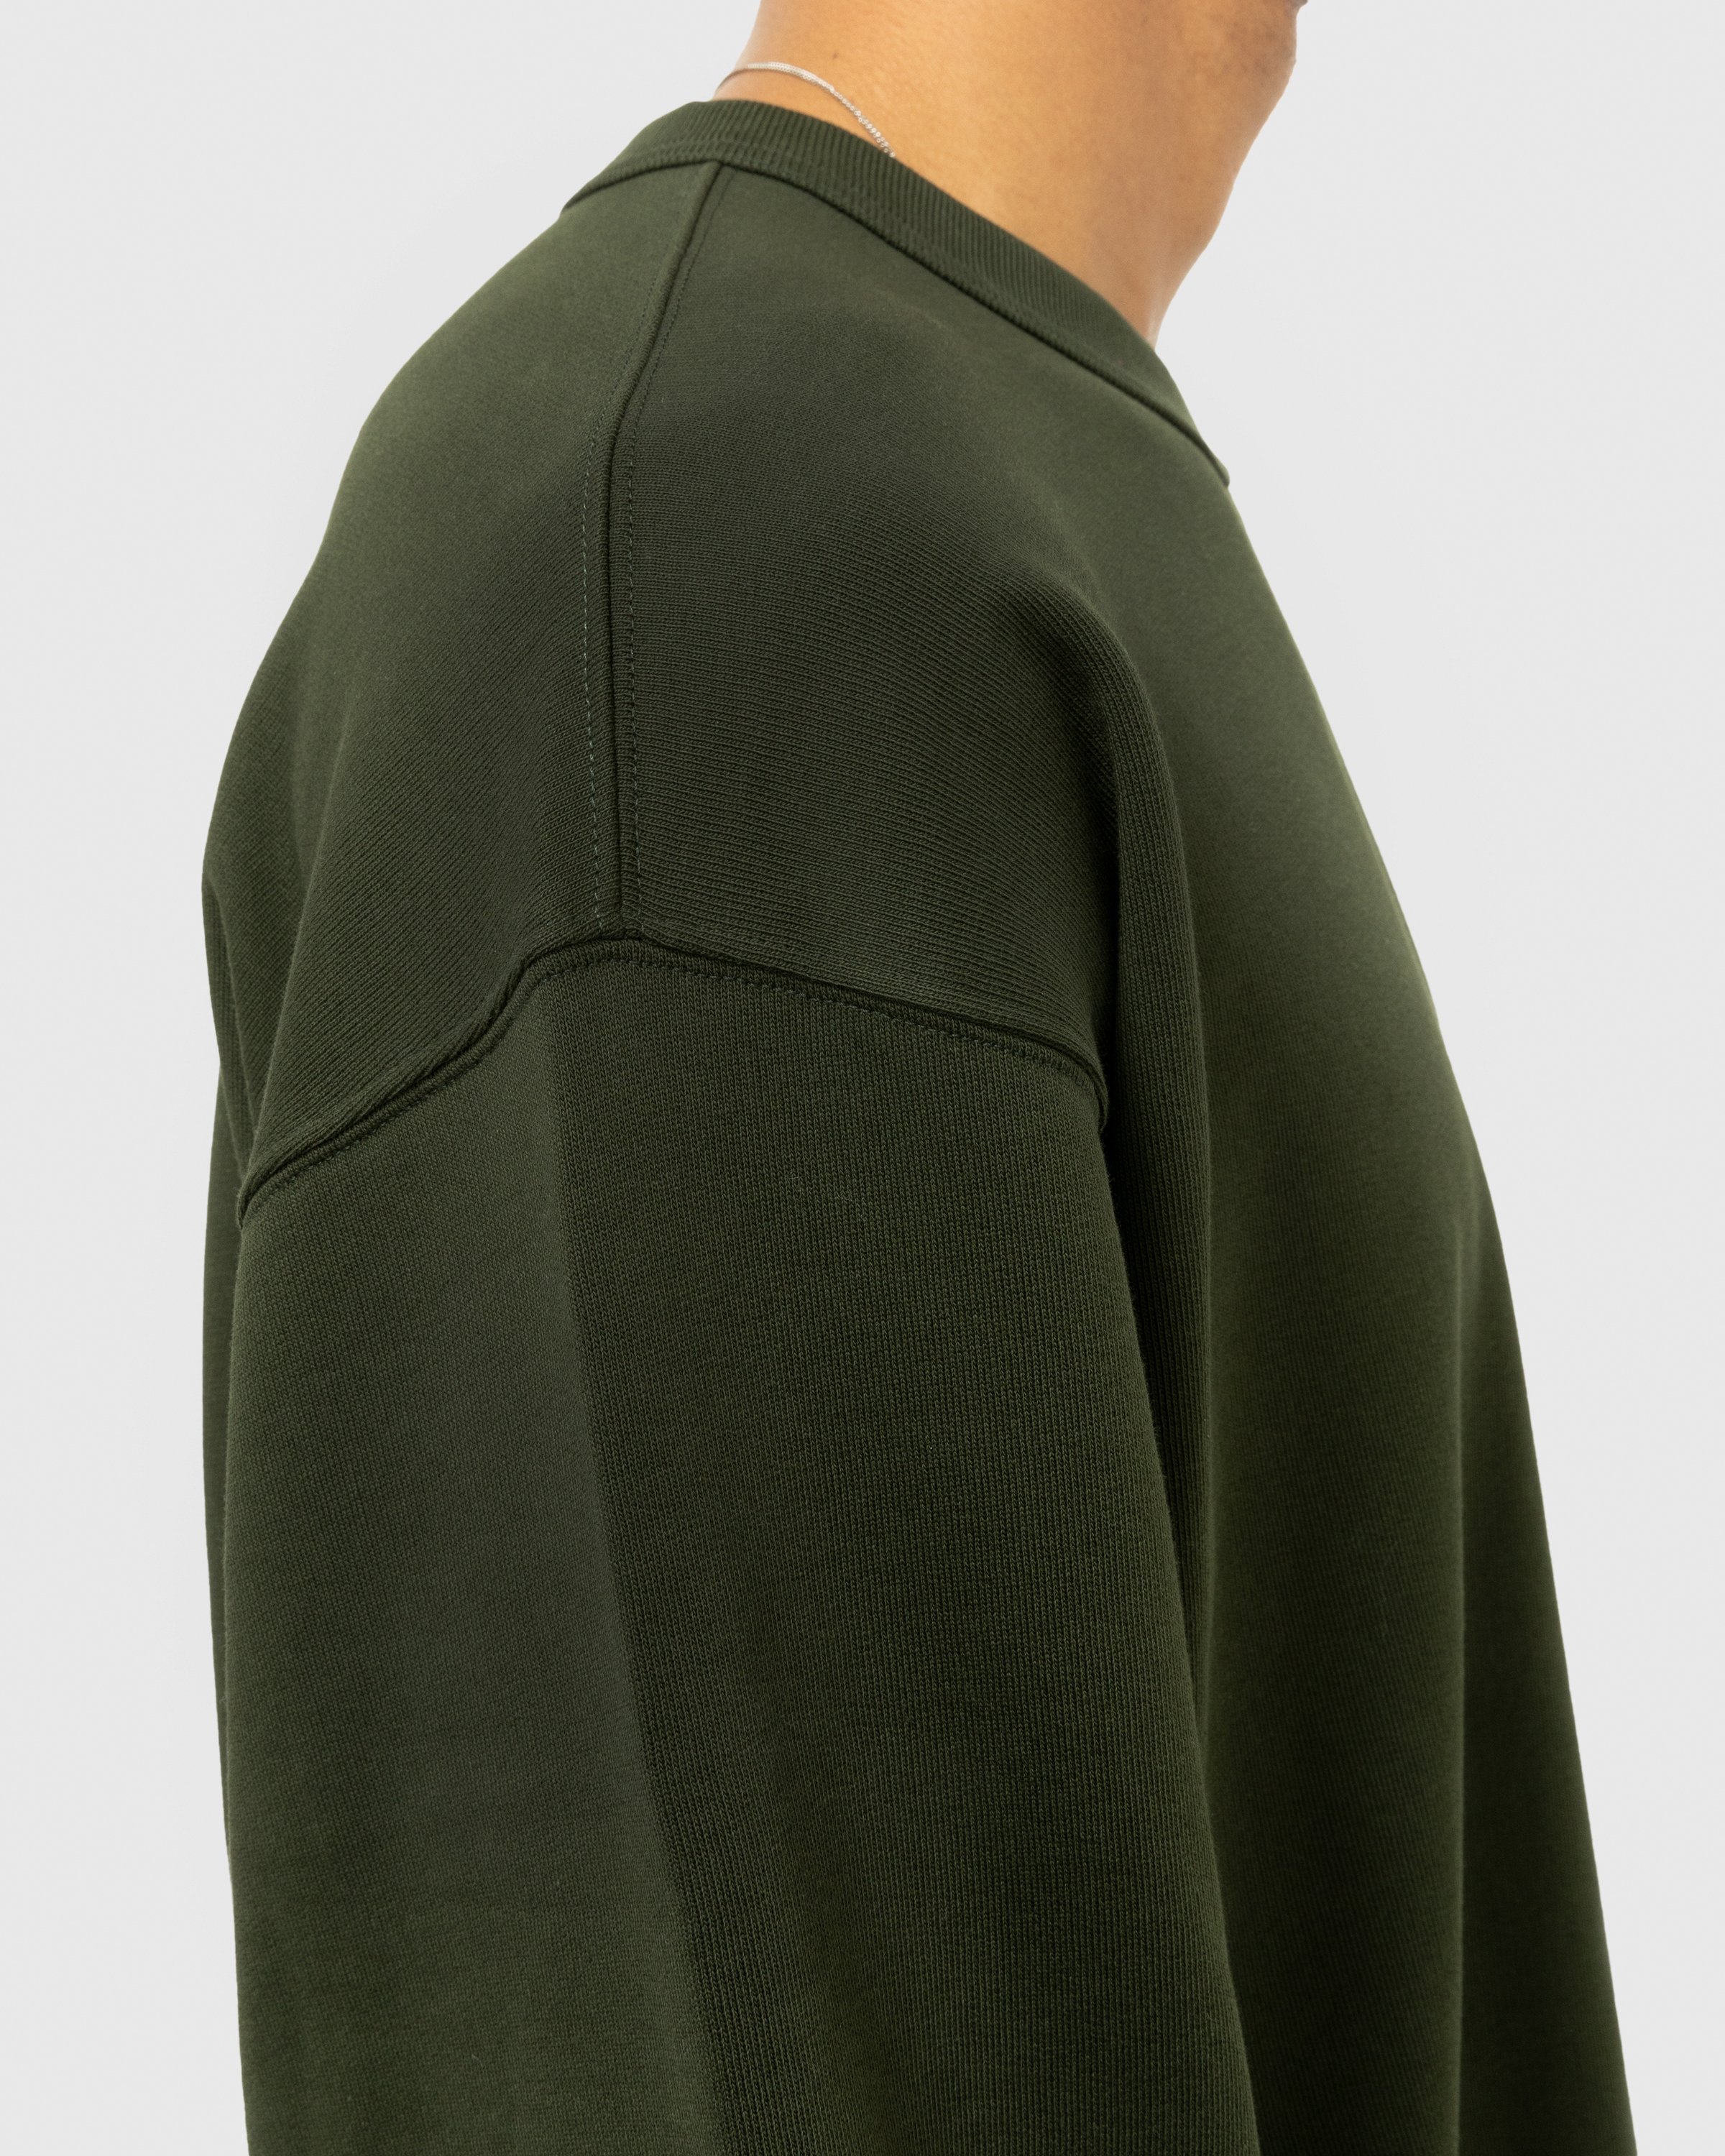 Dries van Noten - Hax Oversized Crewneck Green - Clothing - Green - Image 5